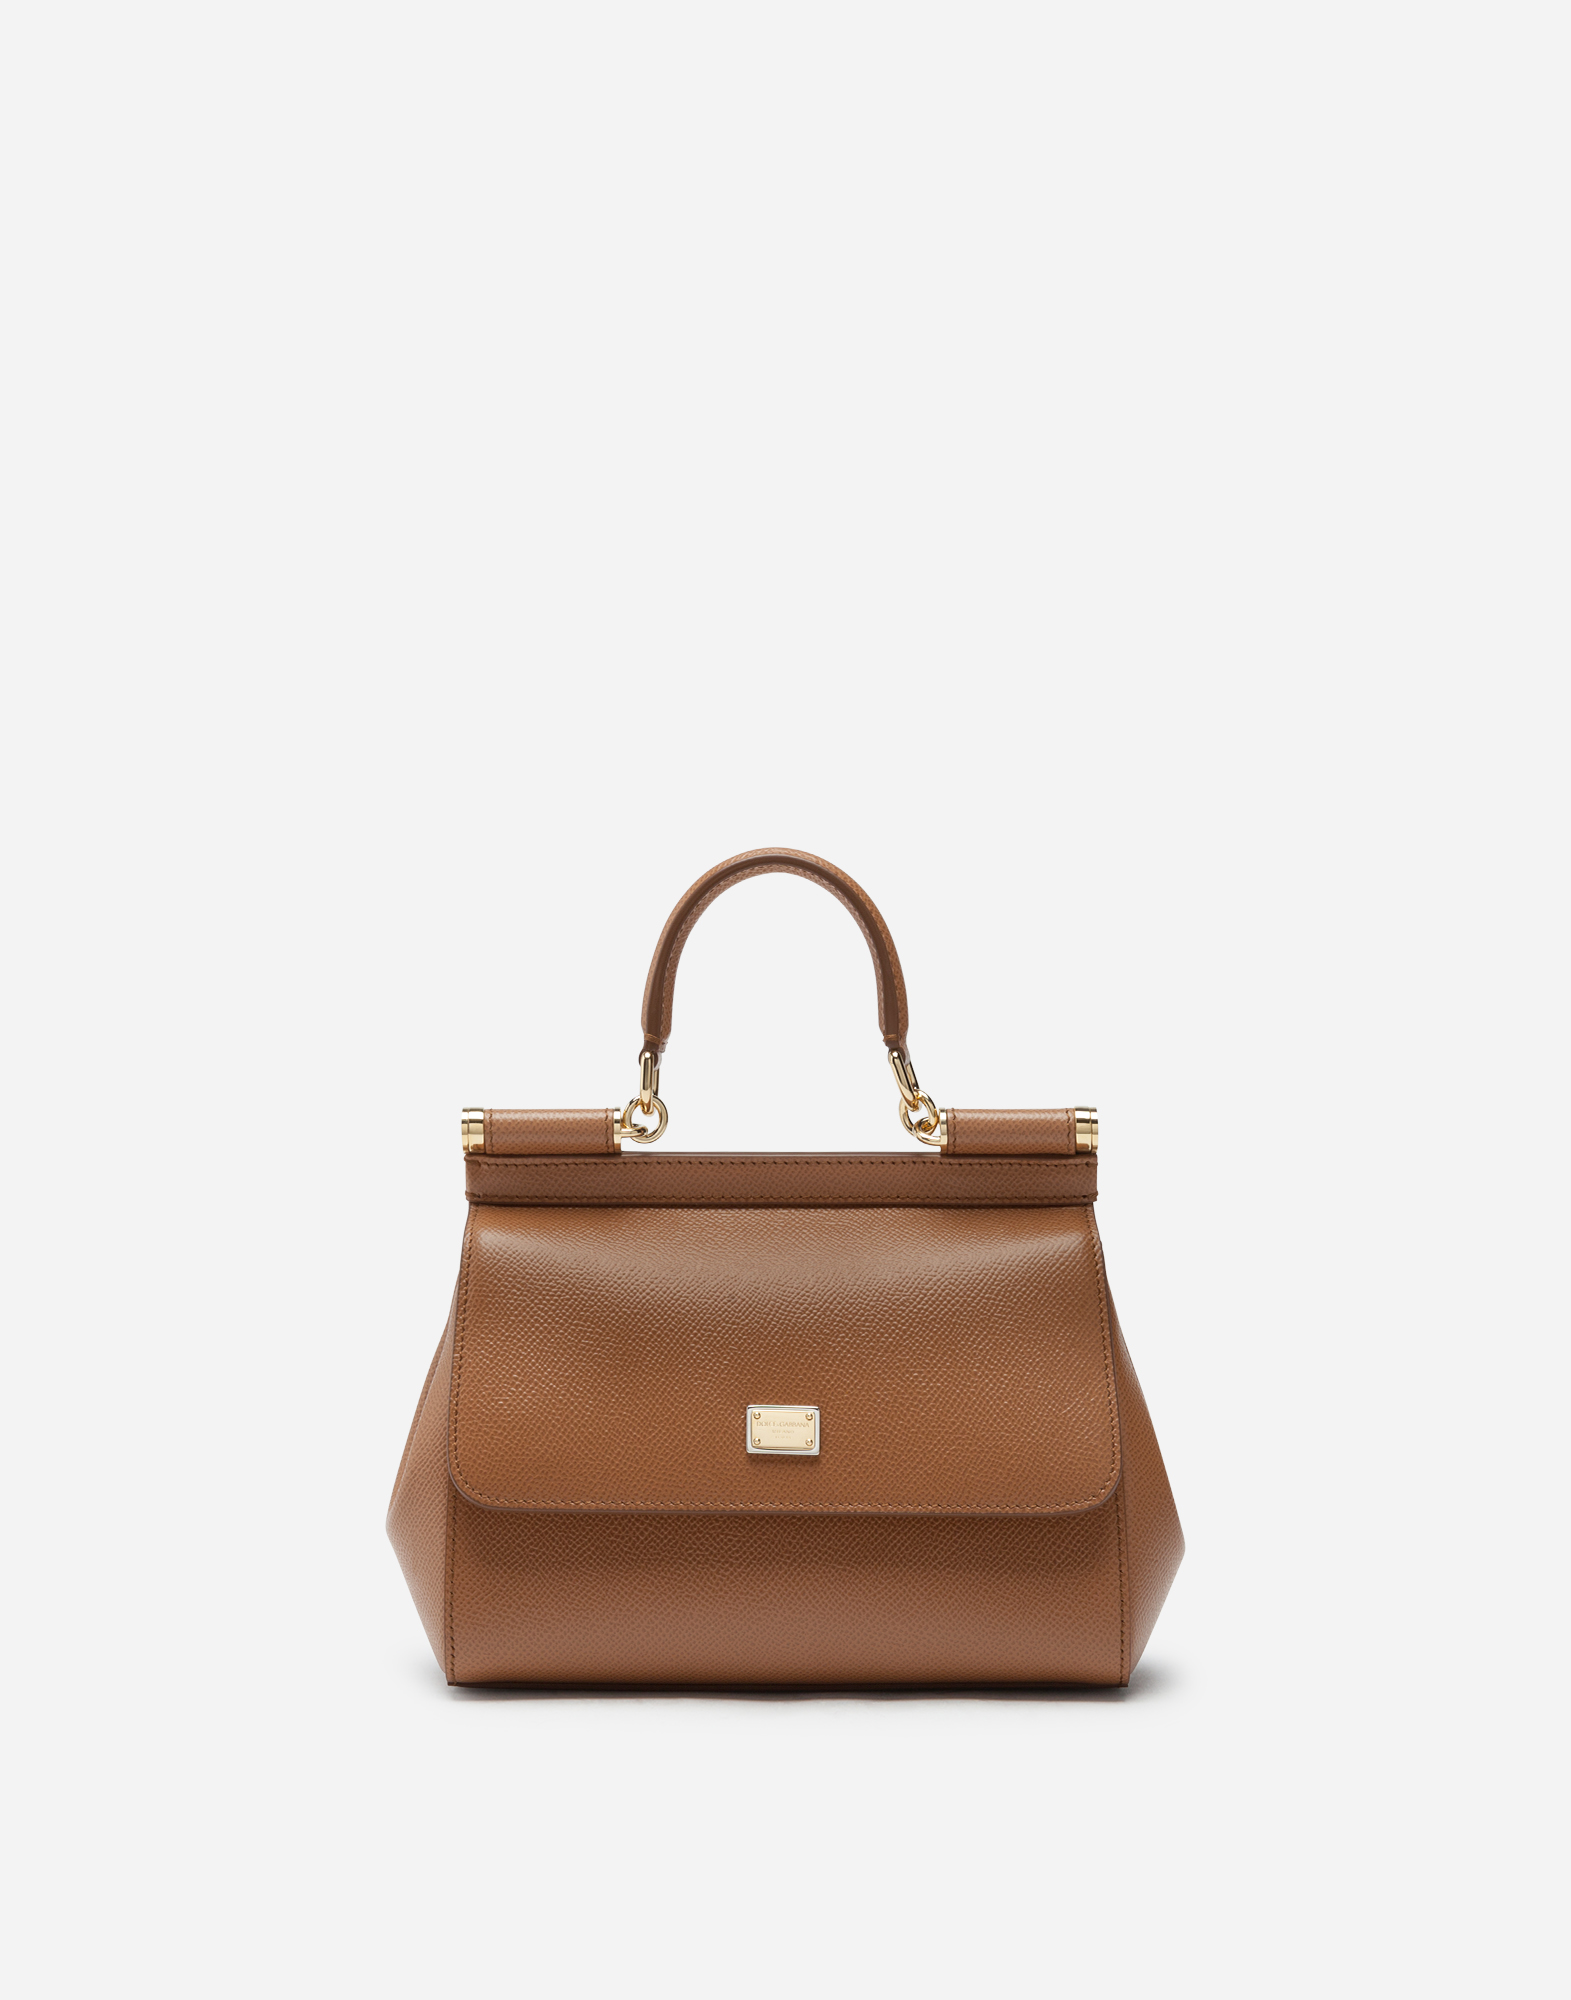 Medium Sicily handbag in Brown